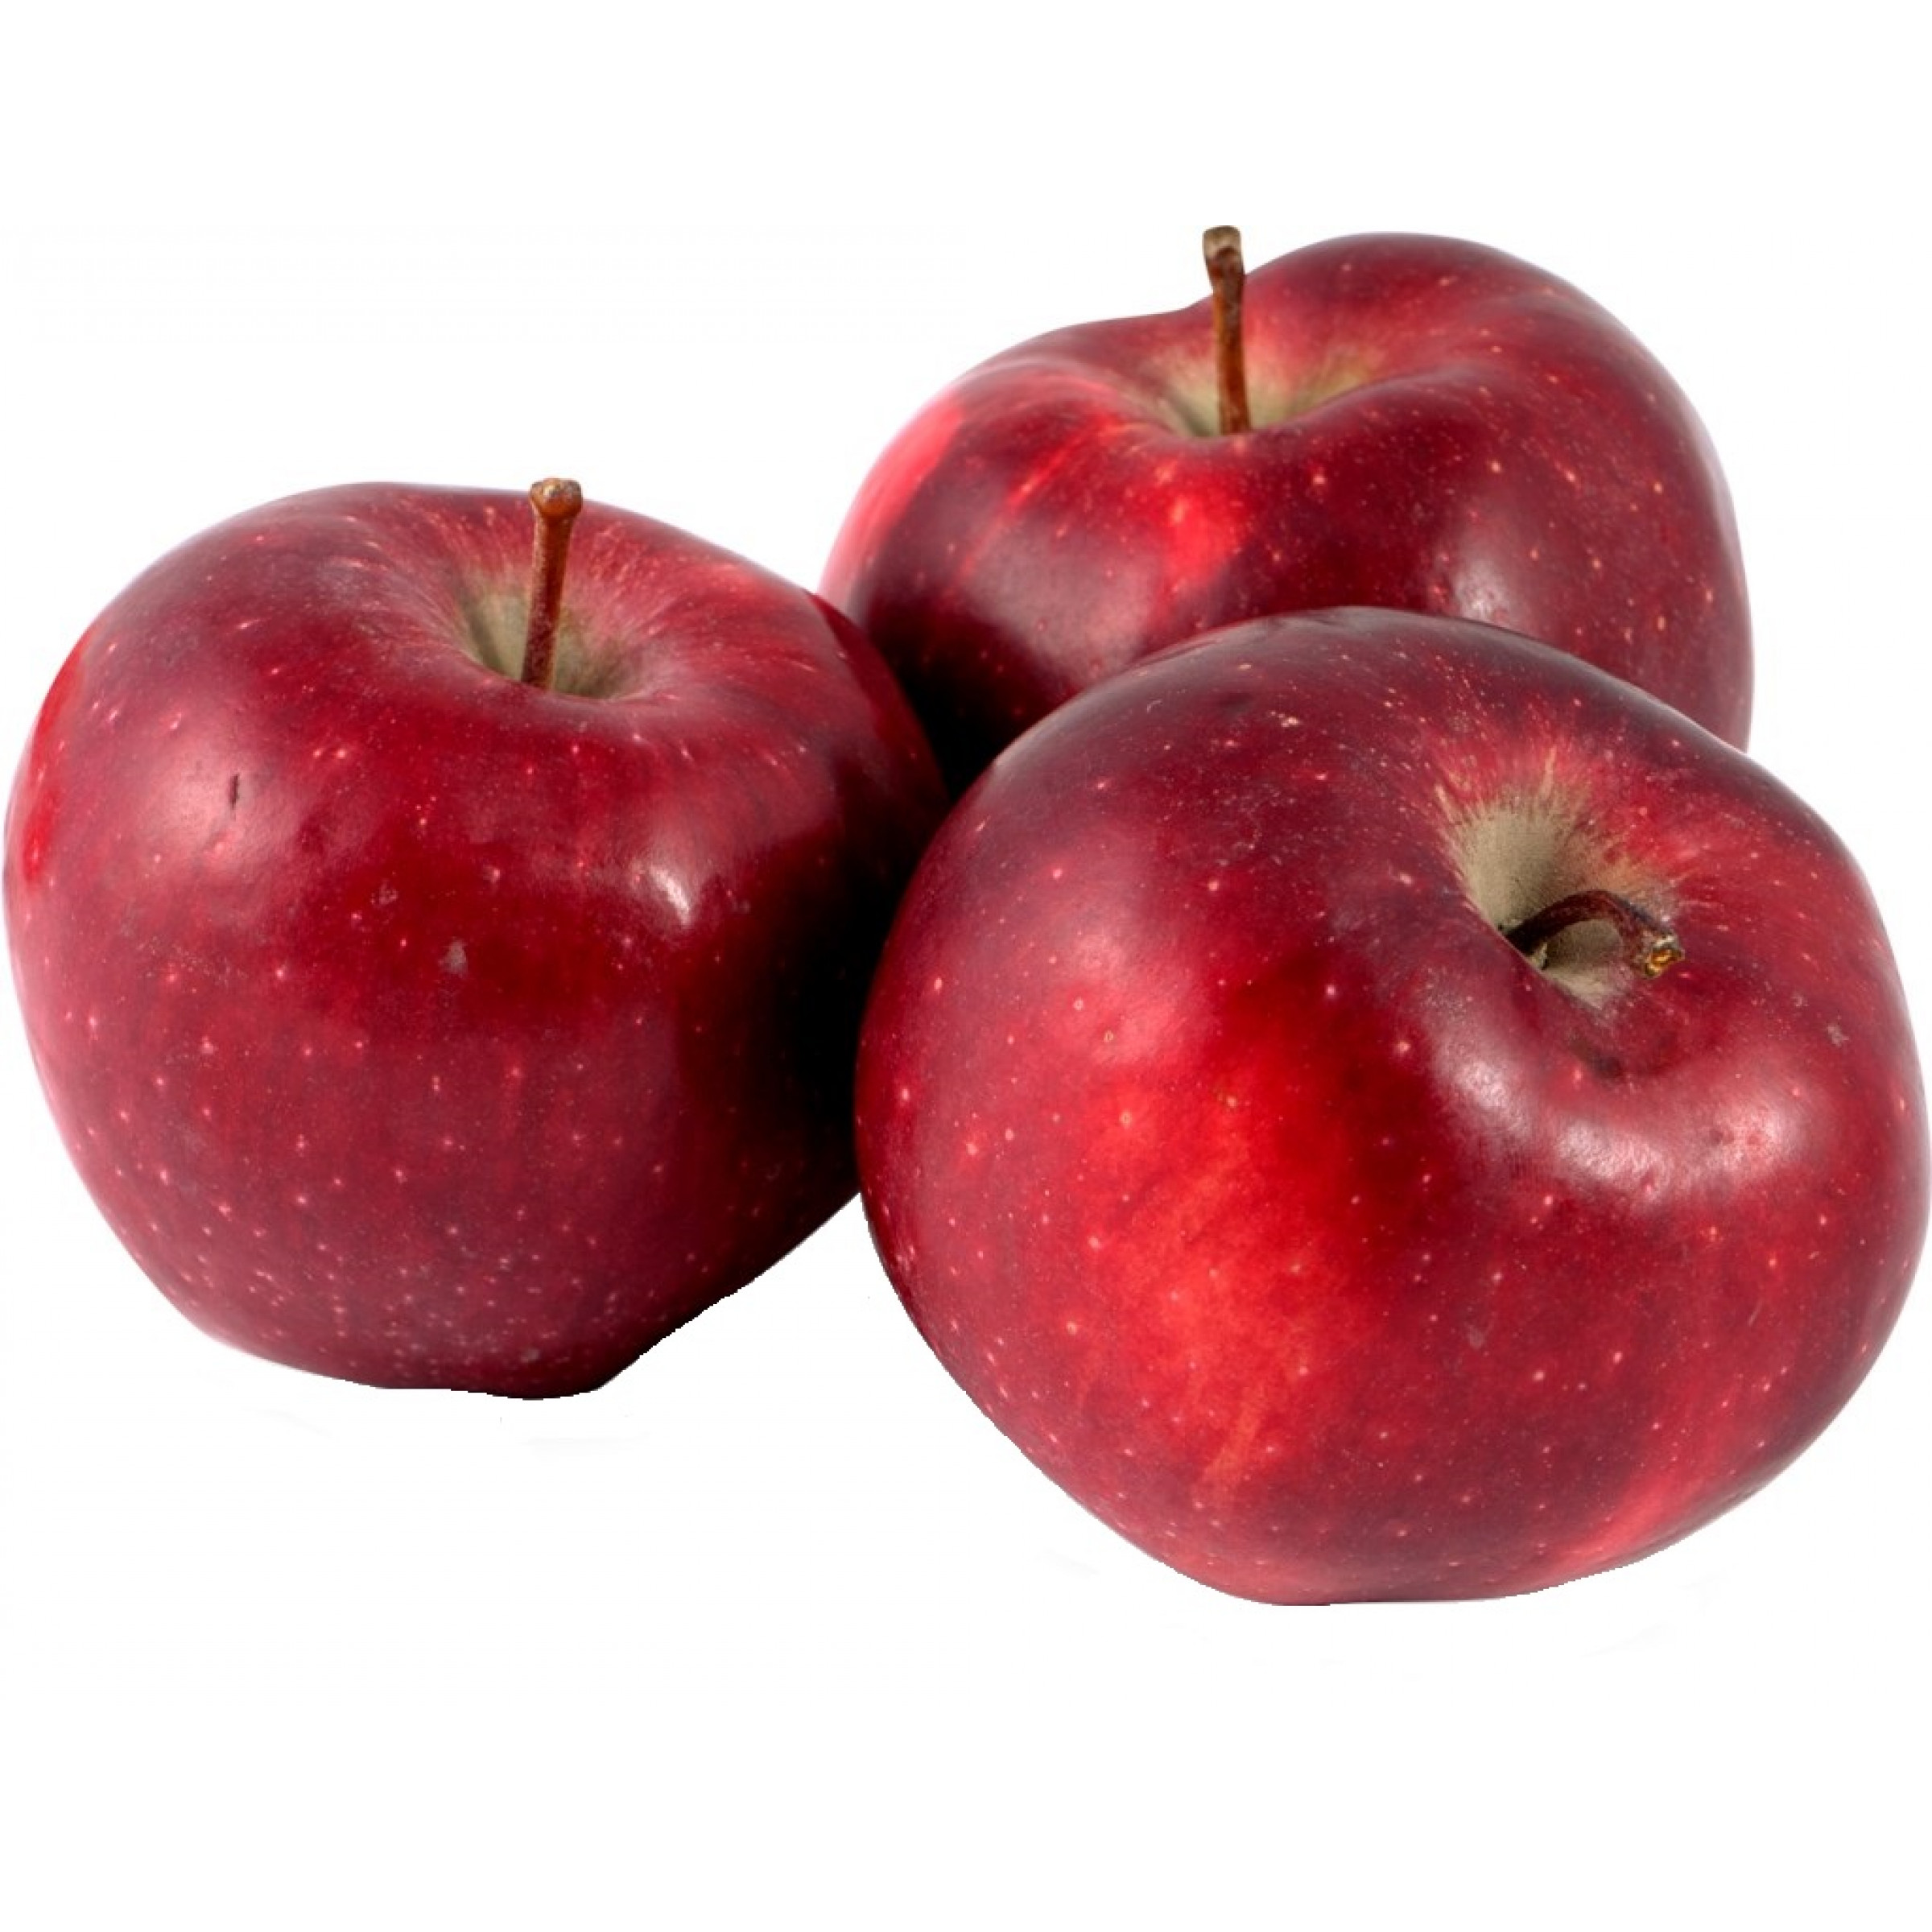 Красные яблоки Ред делишес весовые (средний вес: 1200 г)